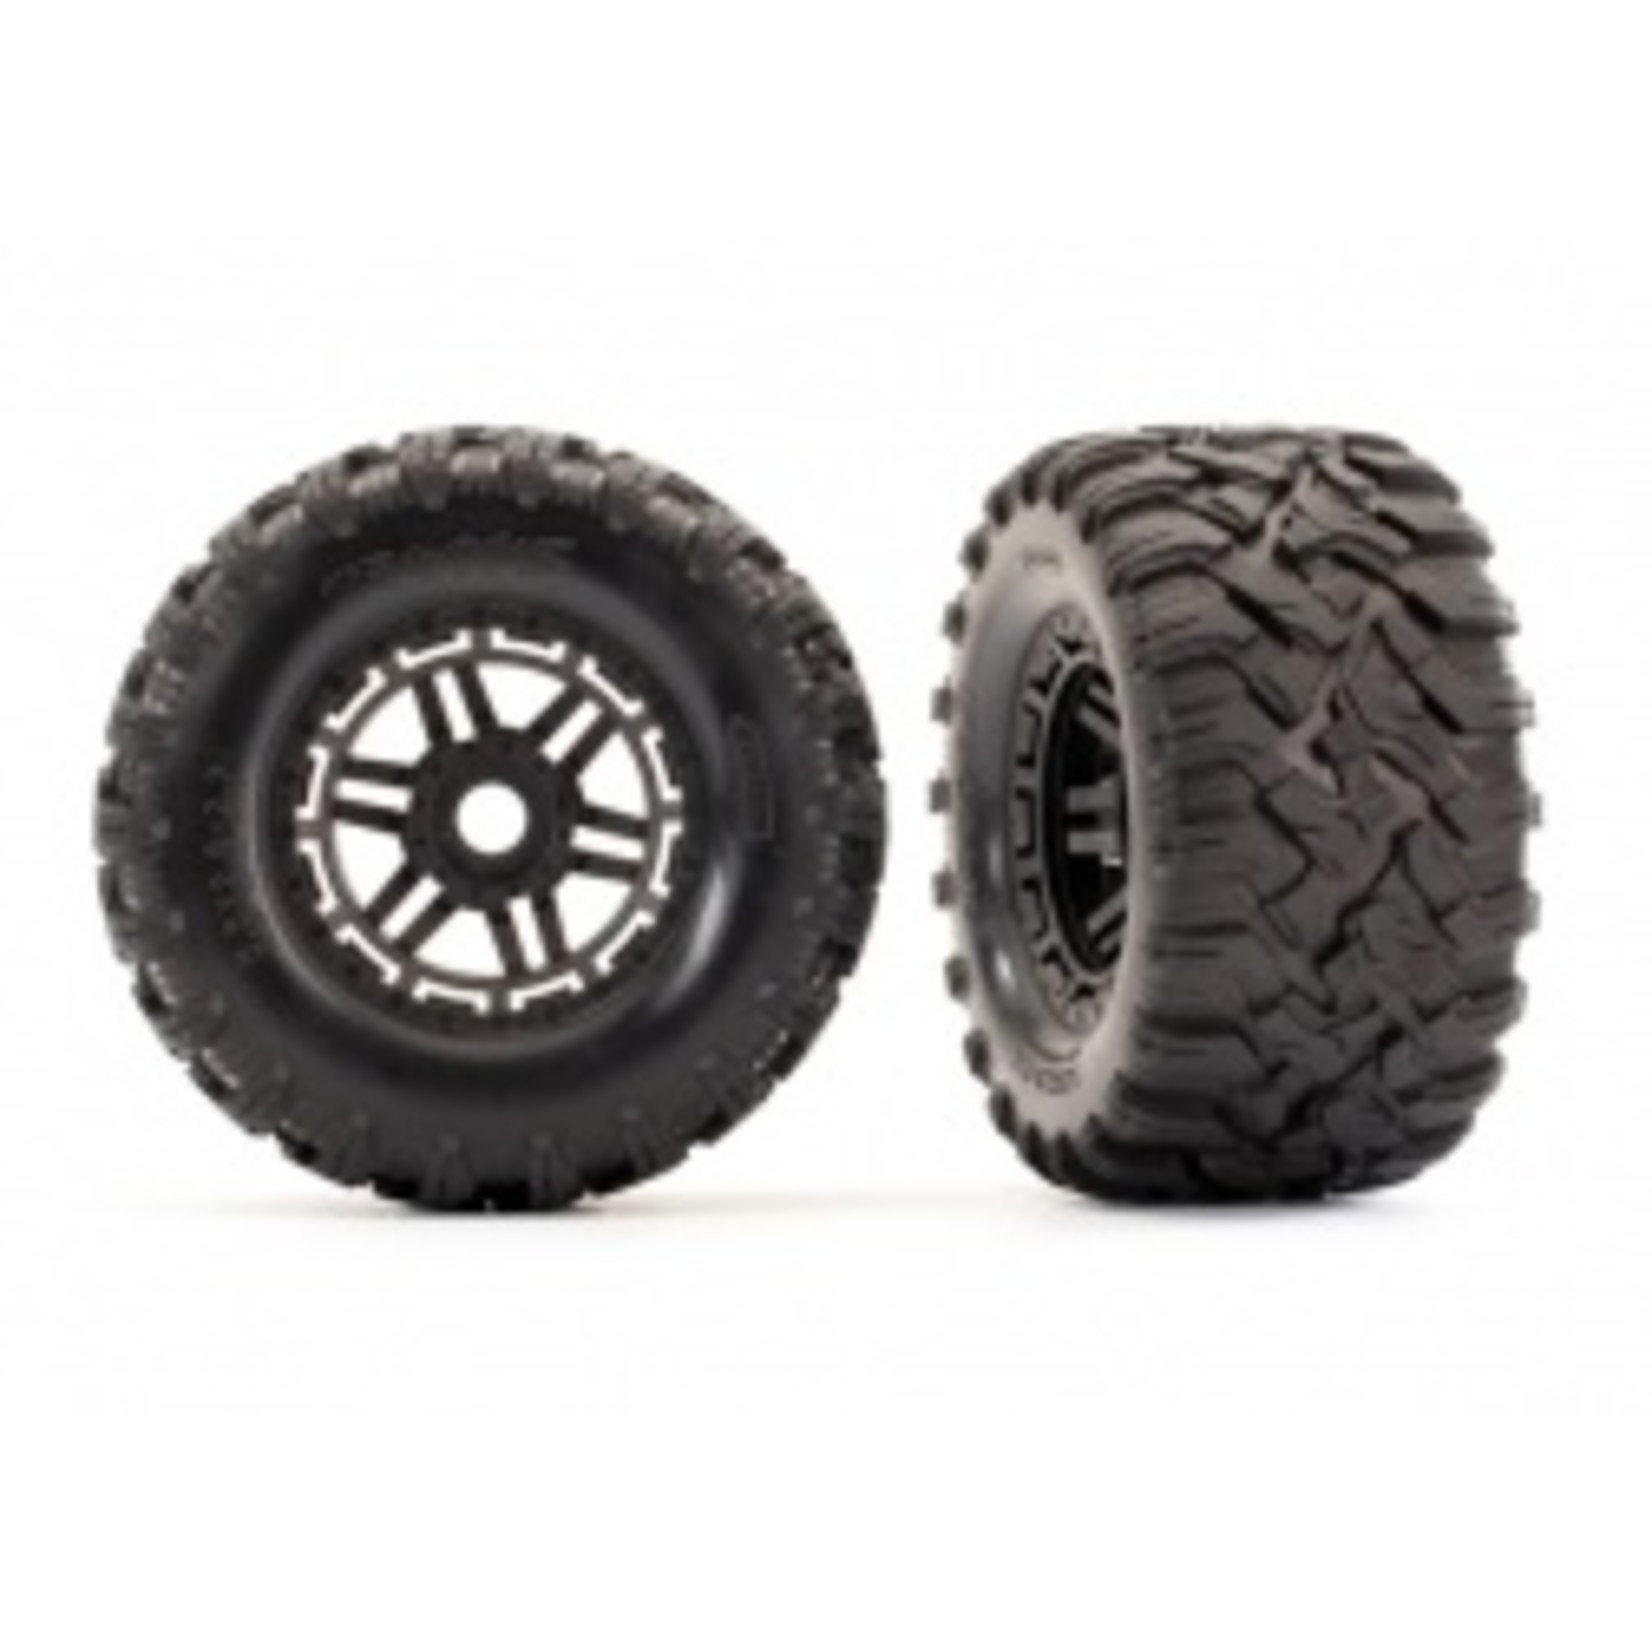 Traxxas 8972 Tires & wheels, assembled, glued (black wheels, Maxx® All-Terrain tires, foam inserts) (2) (17mm splined) (TSM® rated)